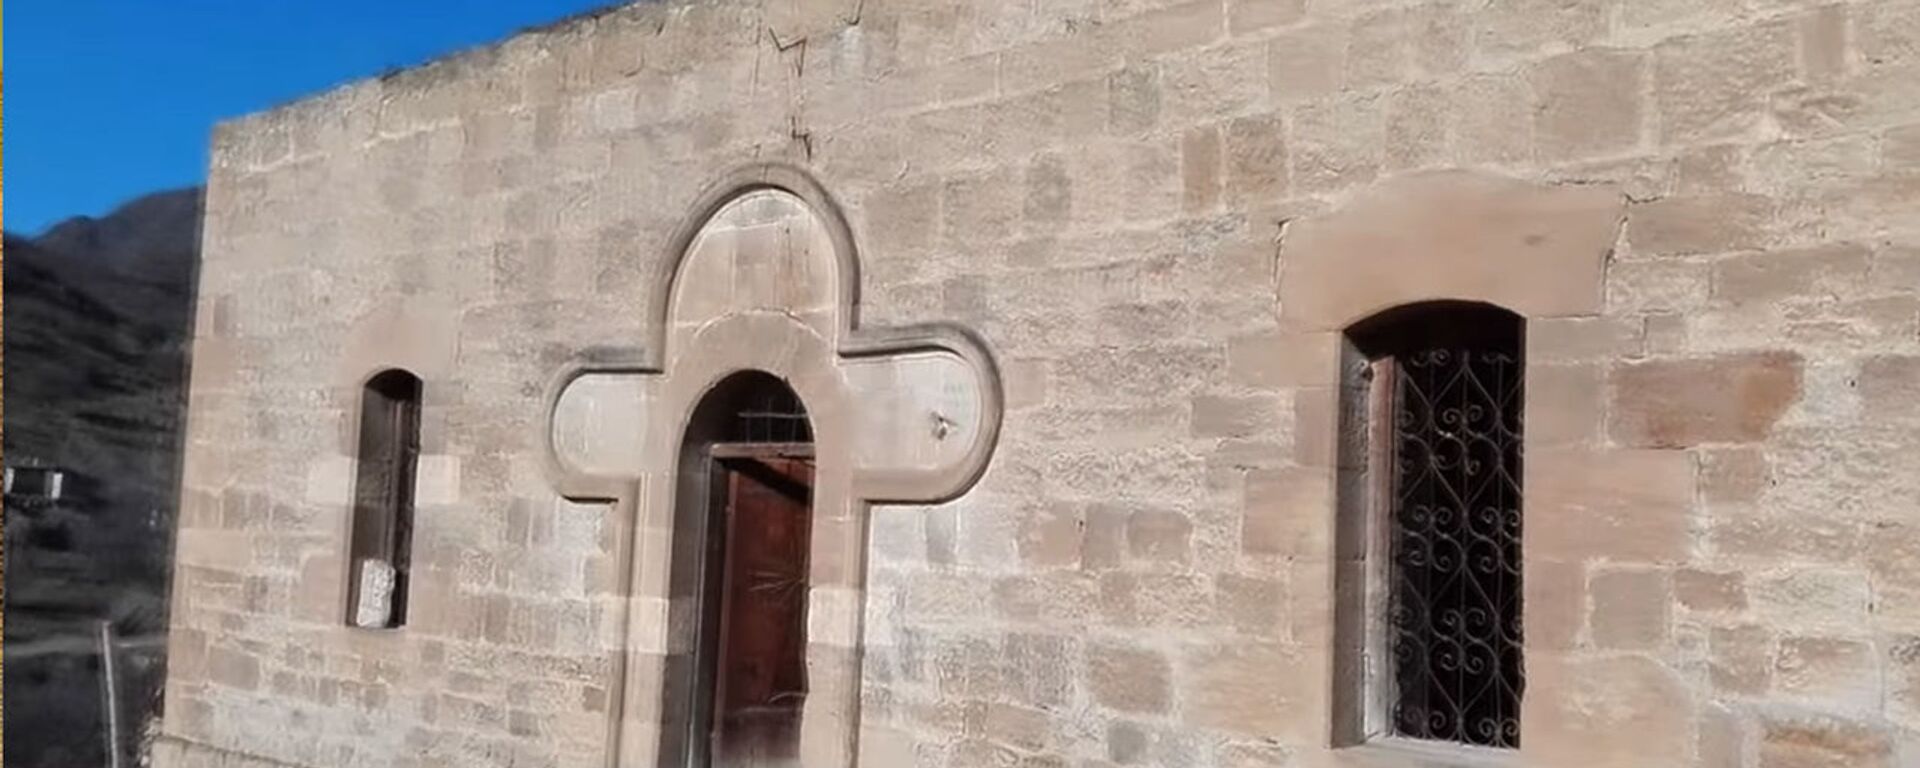 Вход в церковь Св. Егише в Матагисе - Sputnik Արմենիա, 1920, 27.03.2021